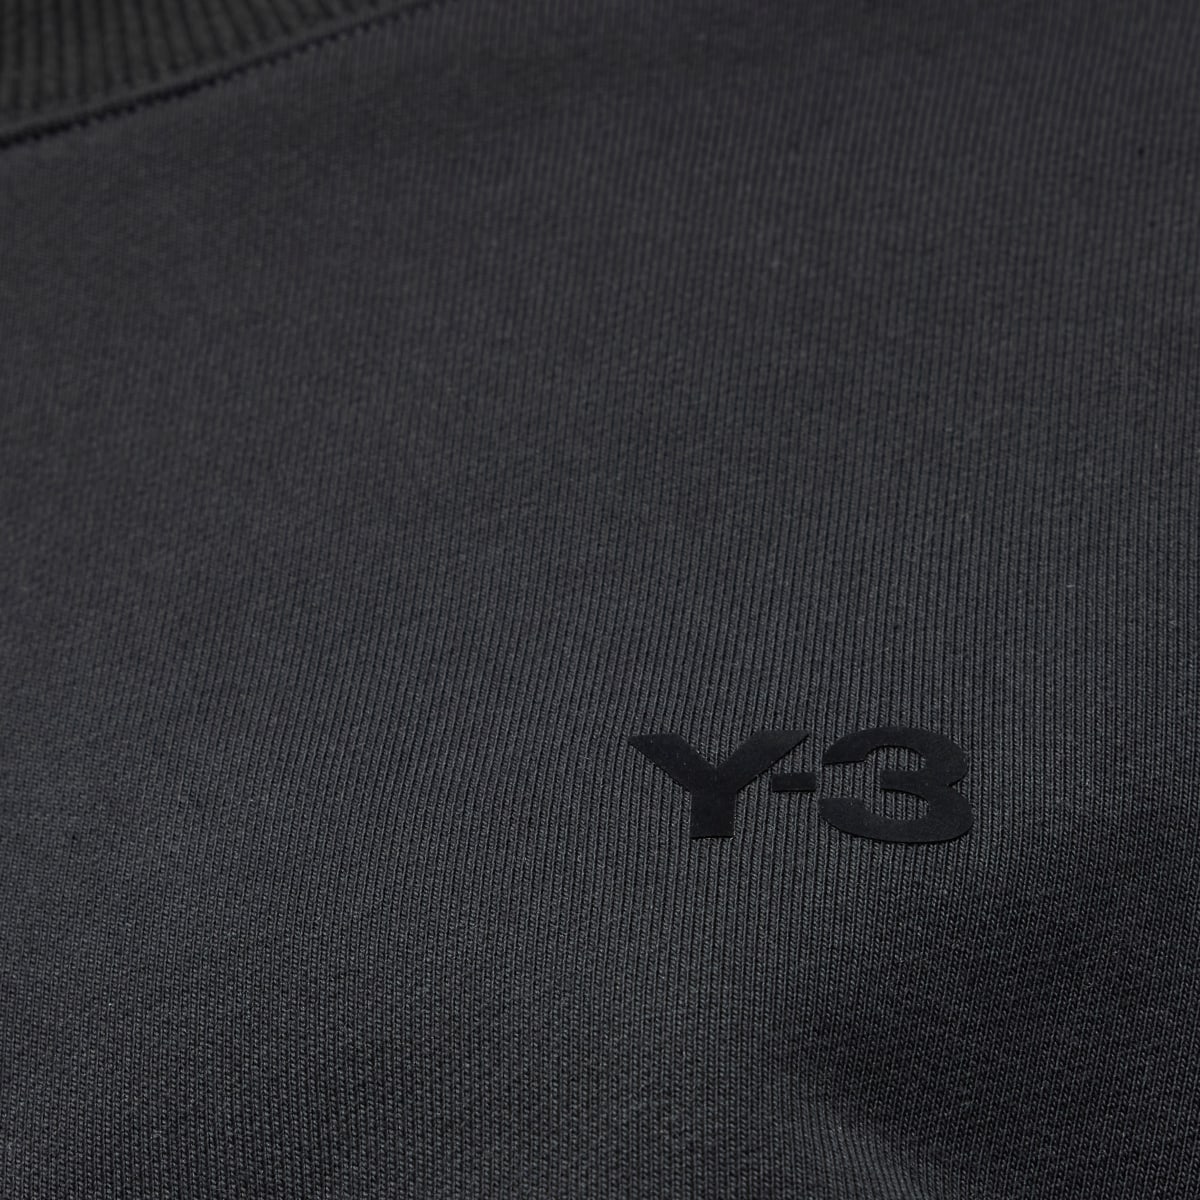 Adidas Y-3 French Terry Boxy Sweatshirt. 6